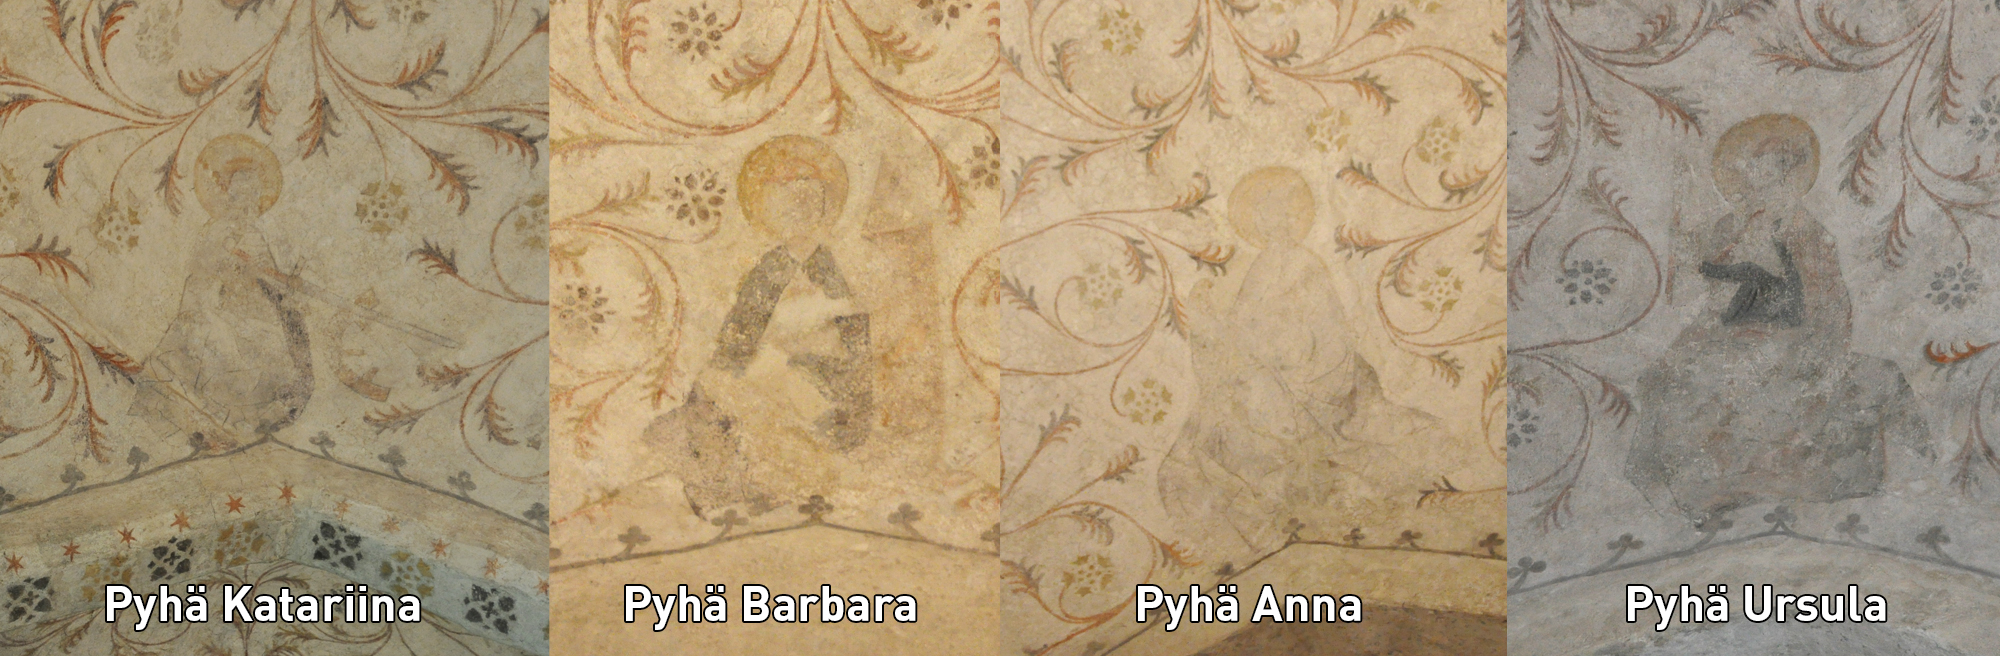 Neljän pyhimyksen kuvat kattomaalauksessa. Vasemmalta Pyhtä Katariina, Barbara, Anna ja Ursula